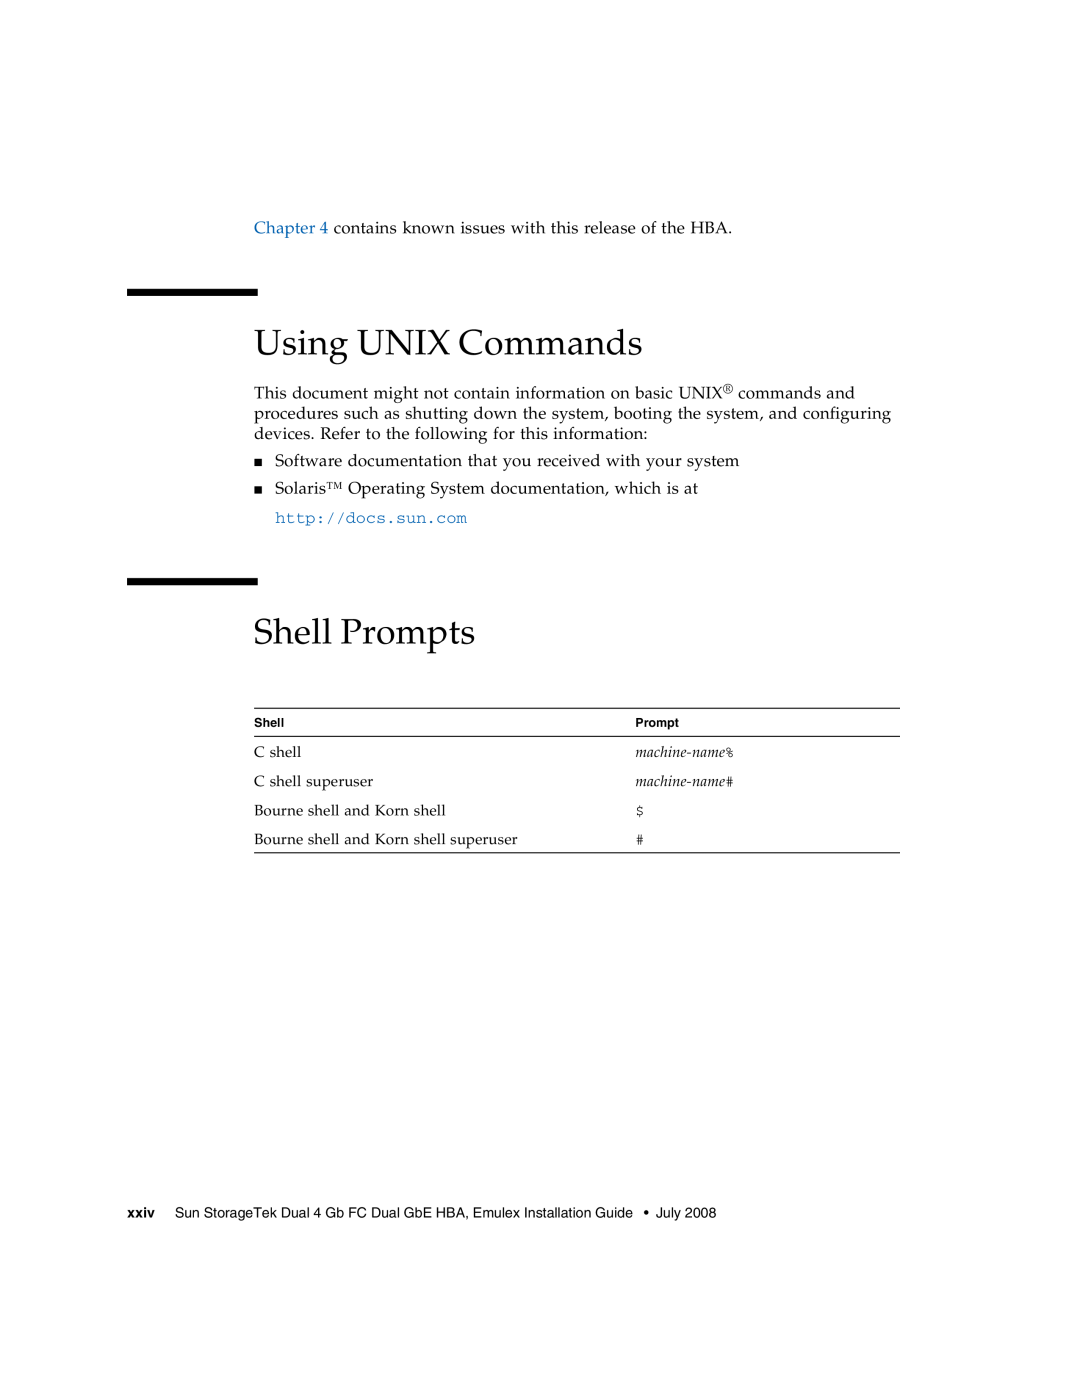 Sun Microsystems SG-XPCIE2FCGBE-E-Z manual Using UNIX Commands, Shell Prompts 